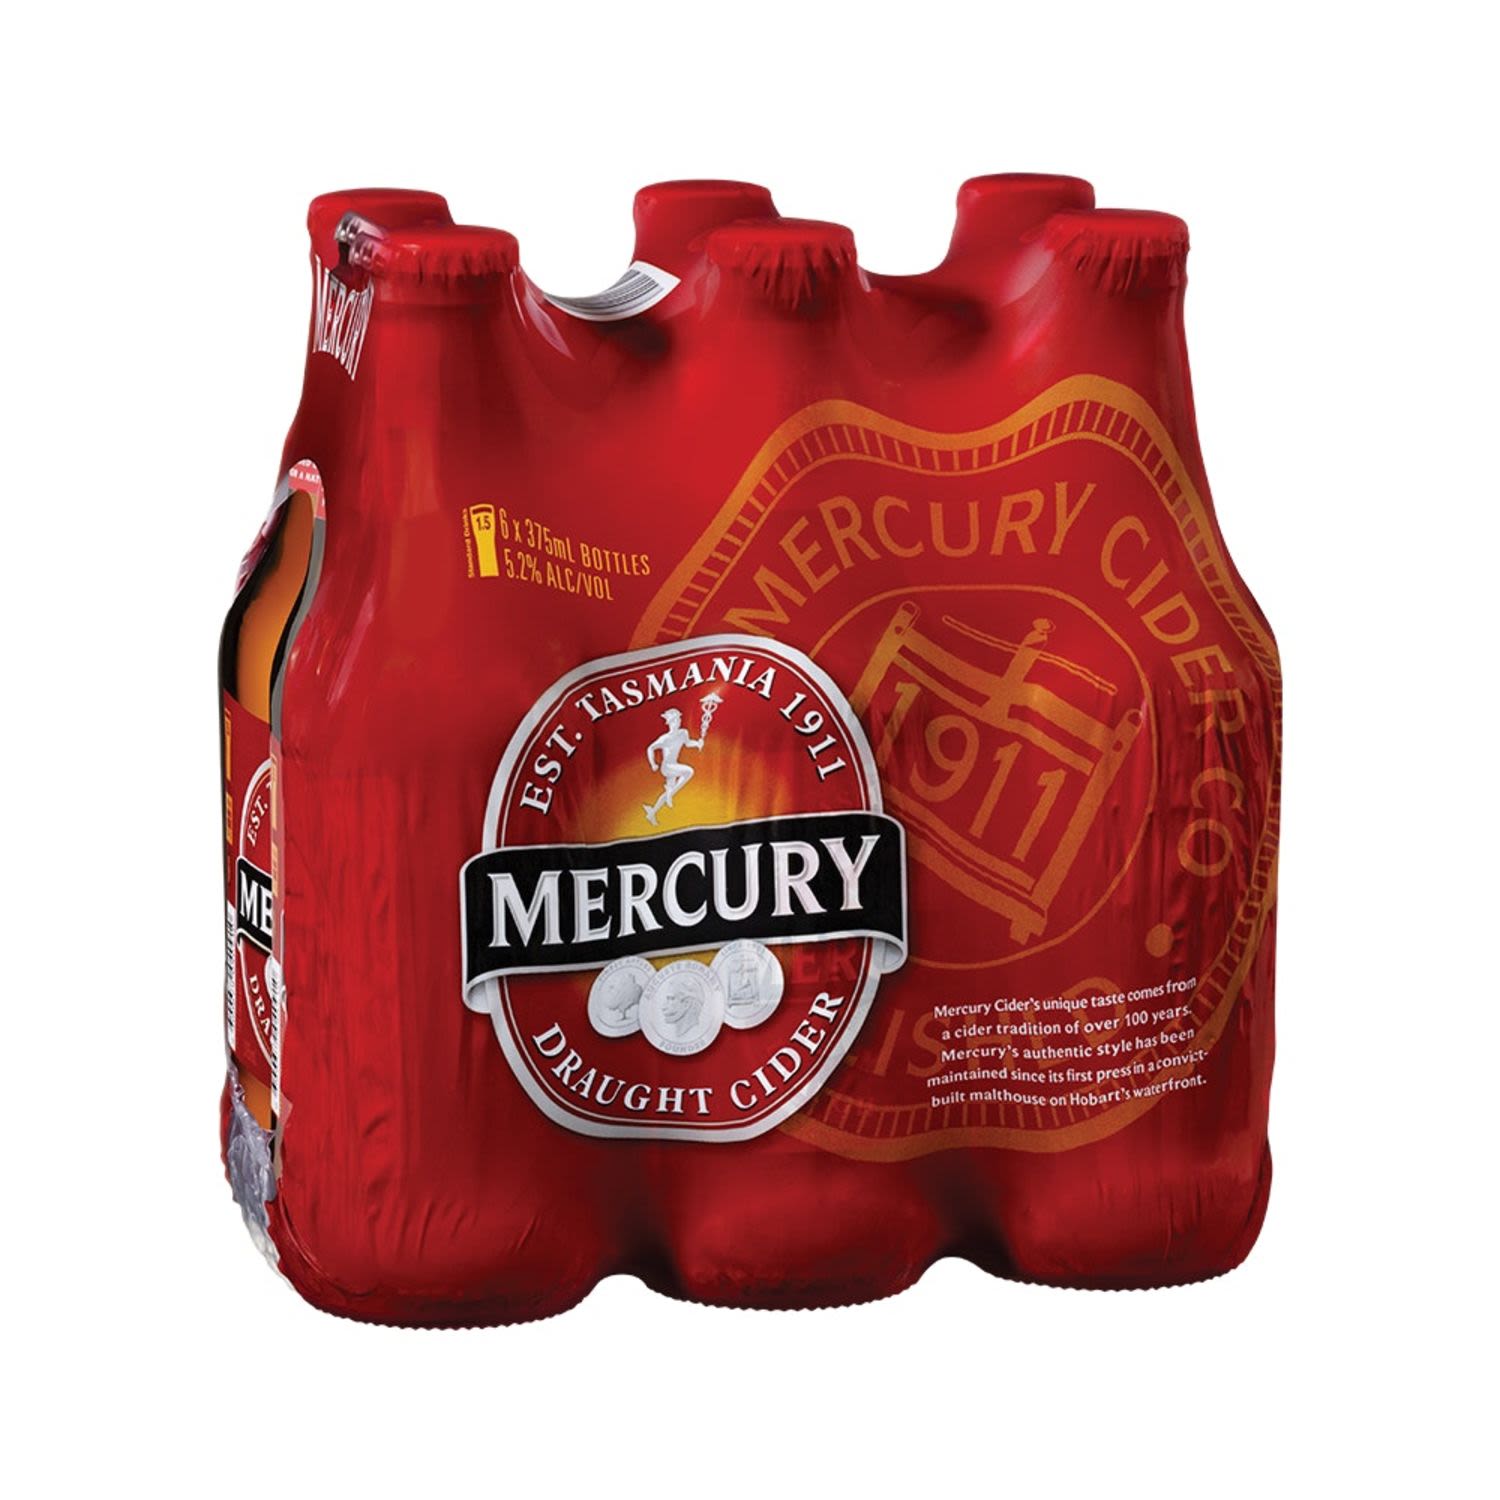 Mercury Draught Cider Bottle 375mL 6 Pack